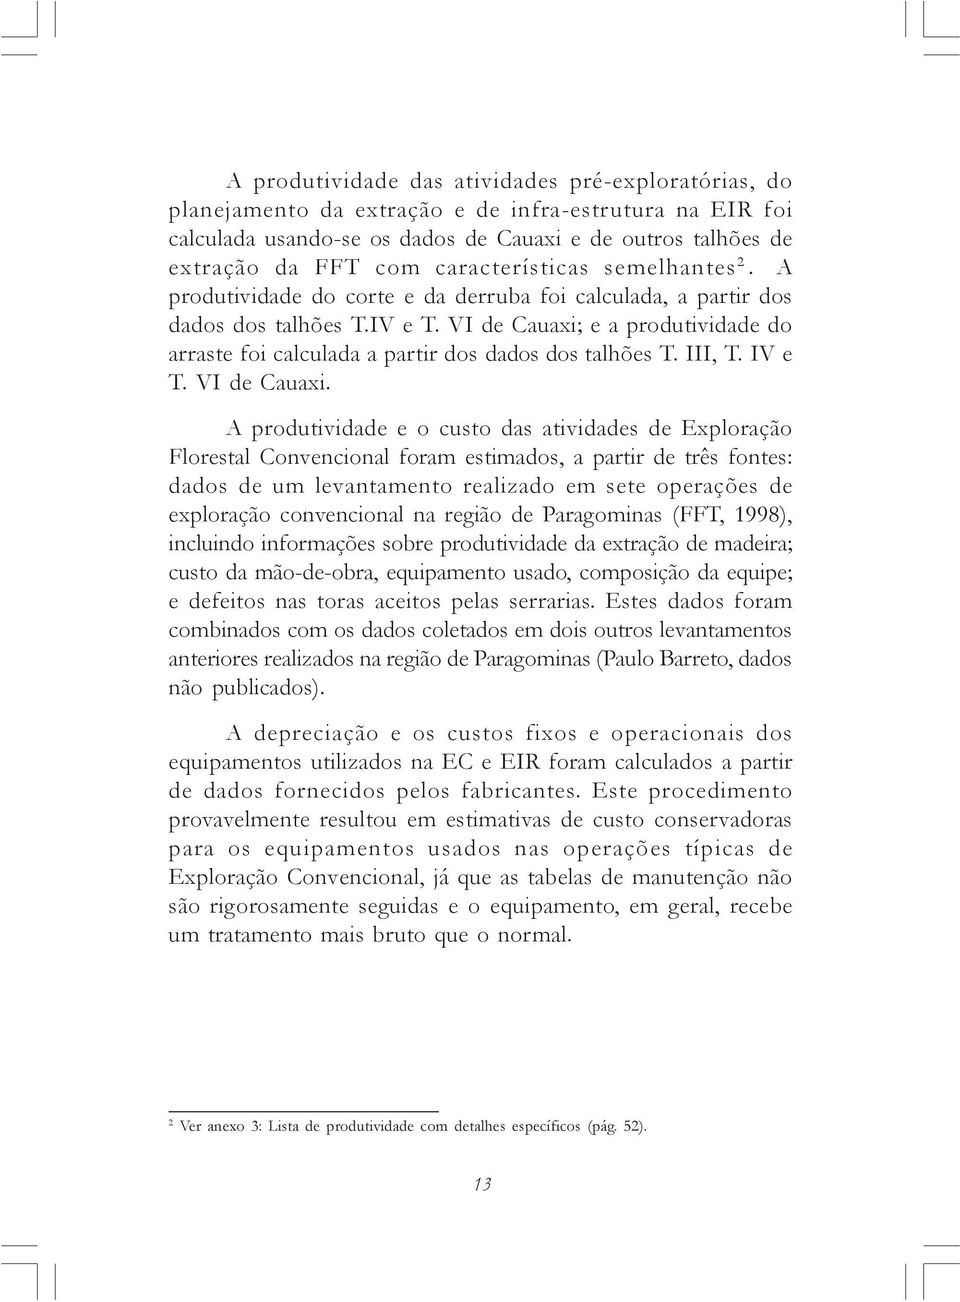 VI de Cauaxi; e a produtividade do arraste foi calculada a partir dos dados dos talhões T. III, T. IV e T. VI de Cauaxi.